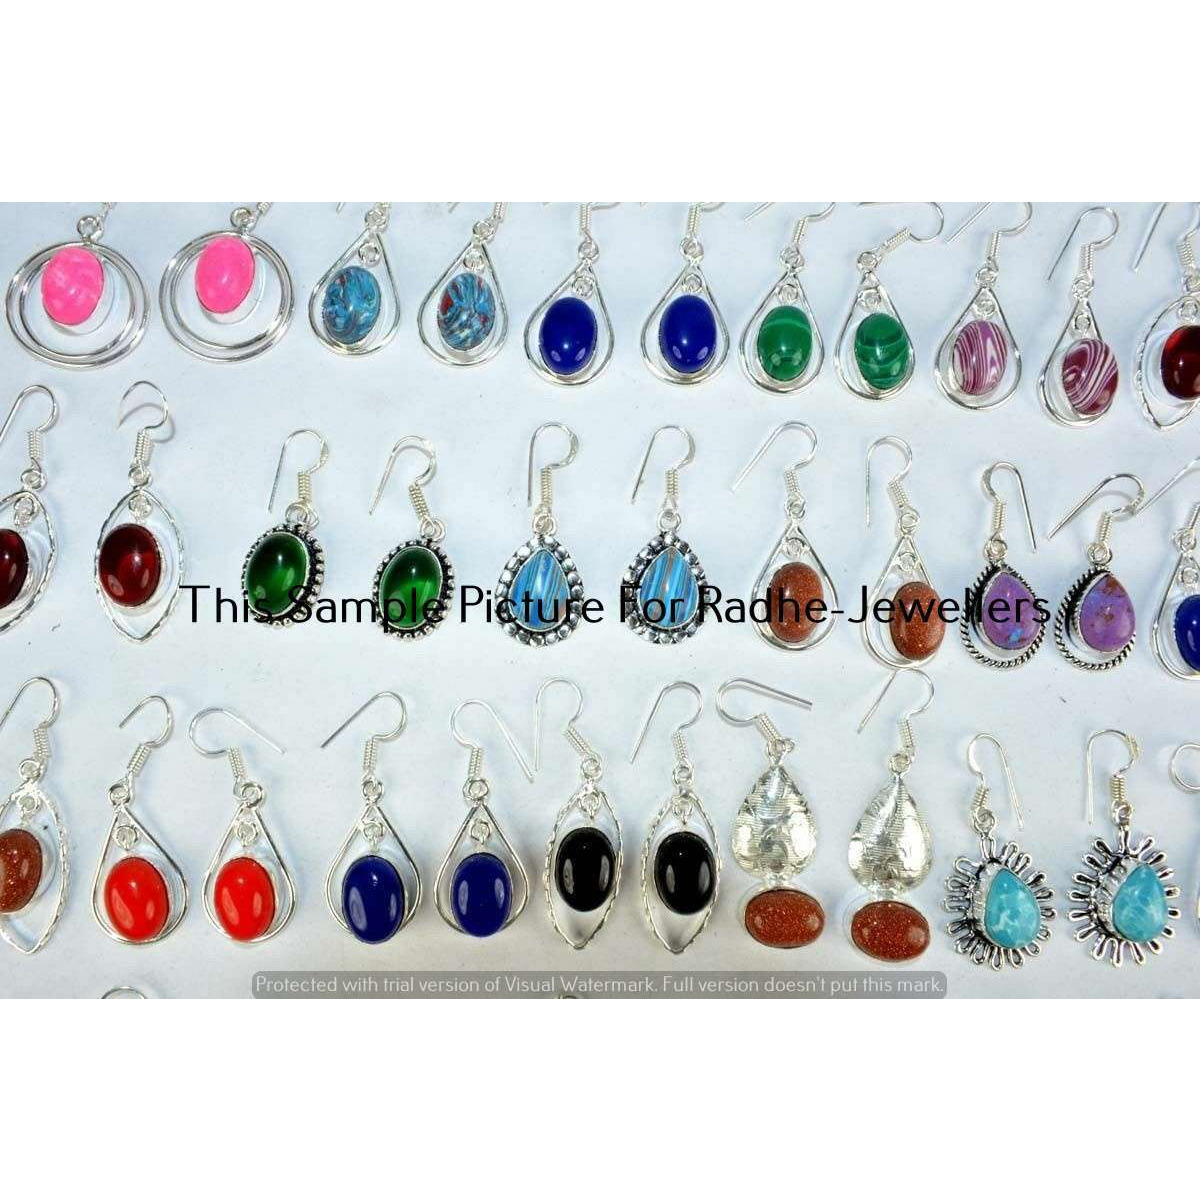 Lapis Lazuli & Mixed 30 Pair Wholesale Lots 925 Silver Earrings Lot-28-365